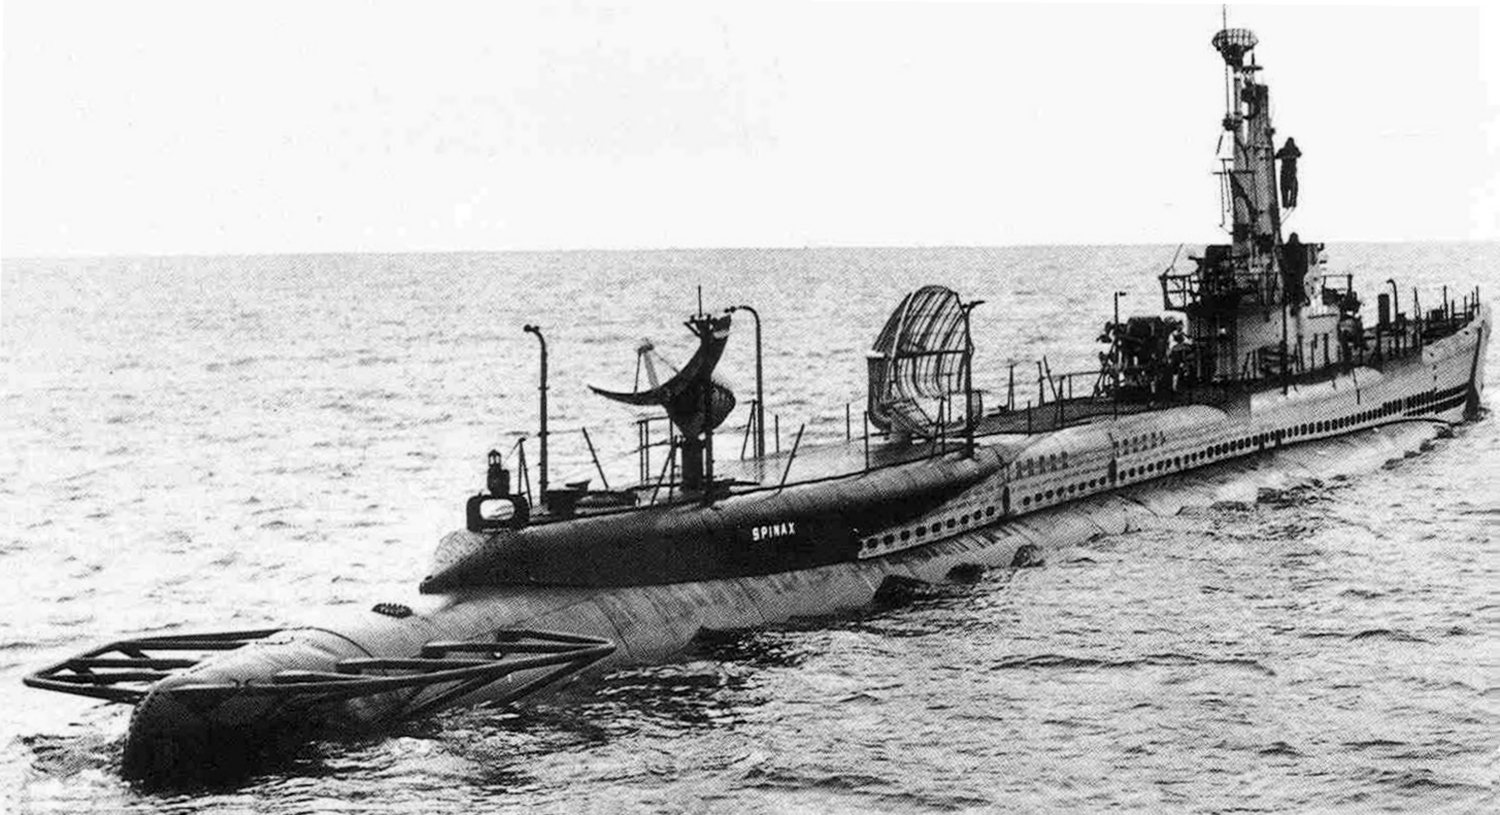 Submarines ideas. submarines, warship, navy ships